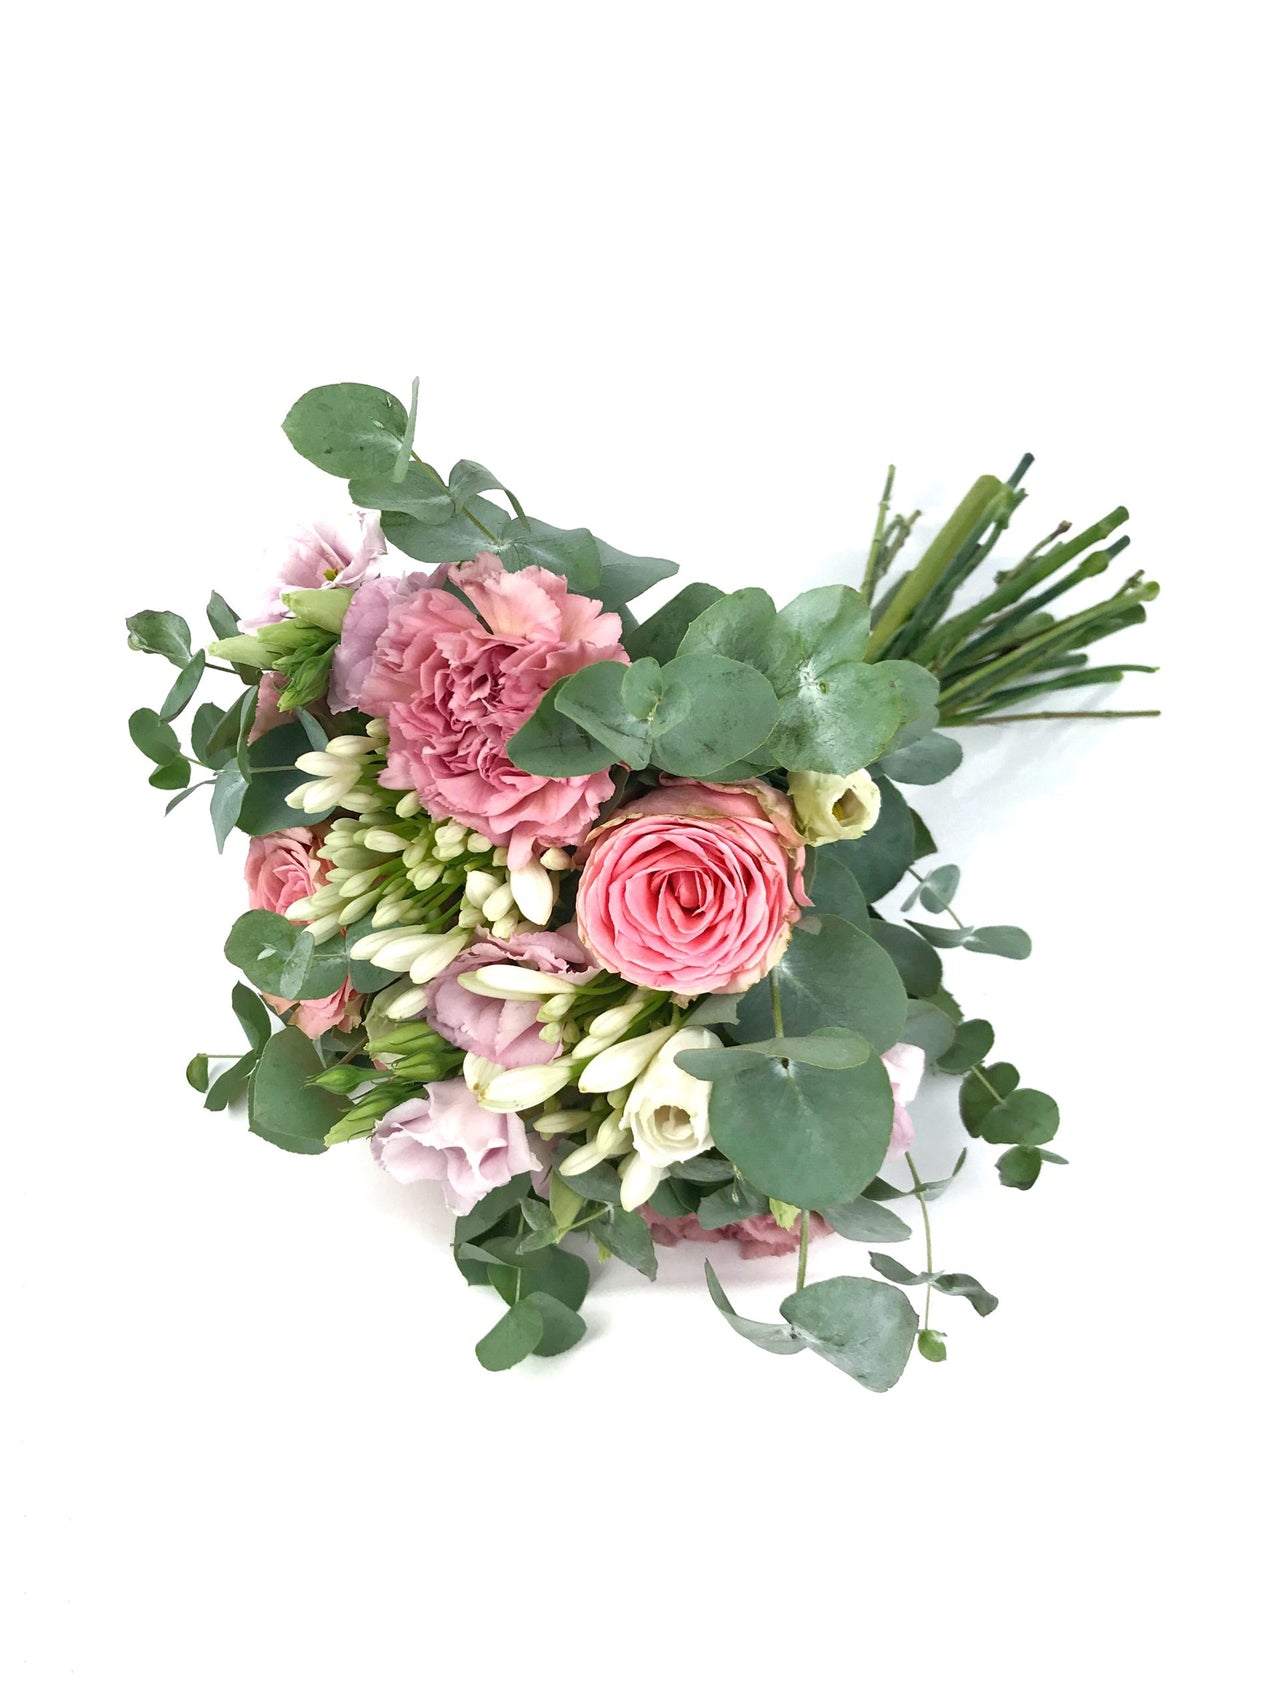 Envoi bouquet pour anniversaire - Bouquet Anniversaire 